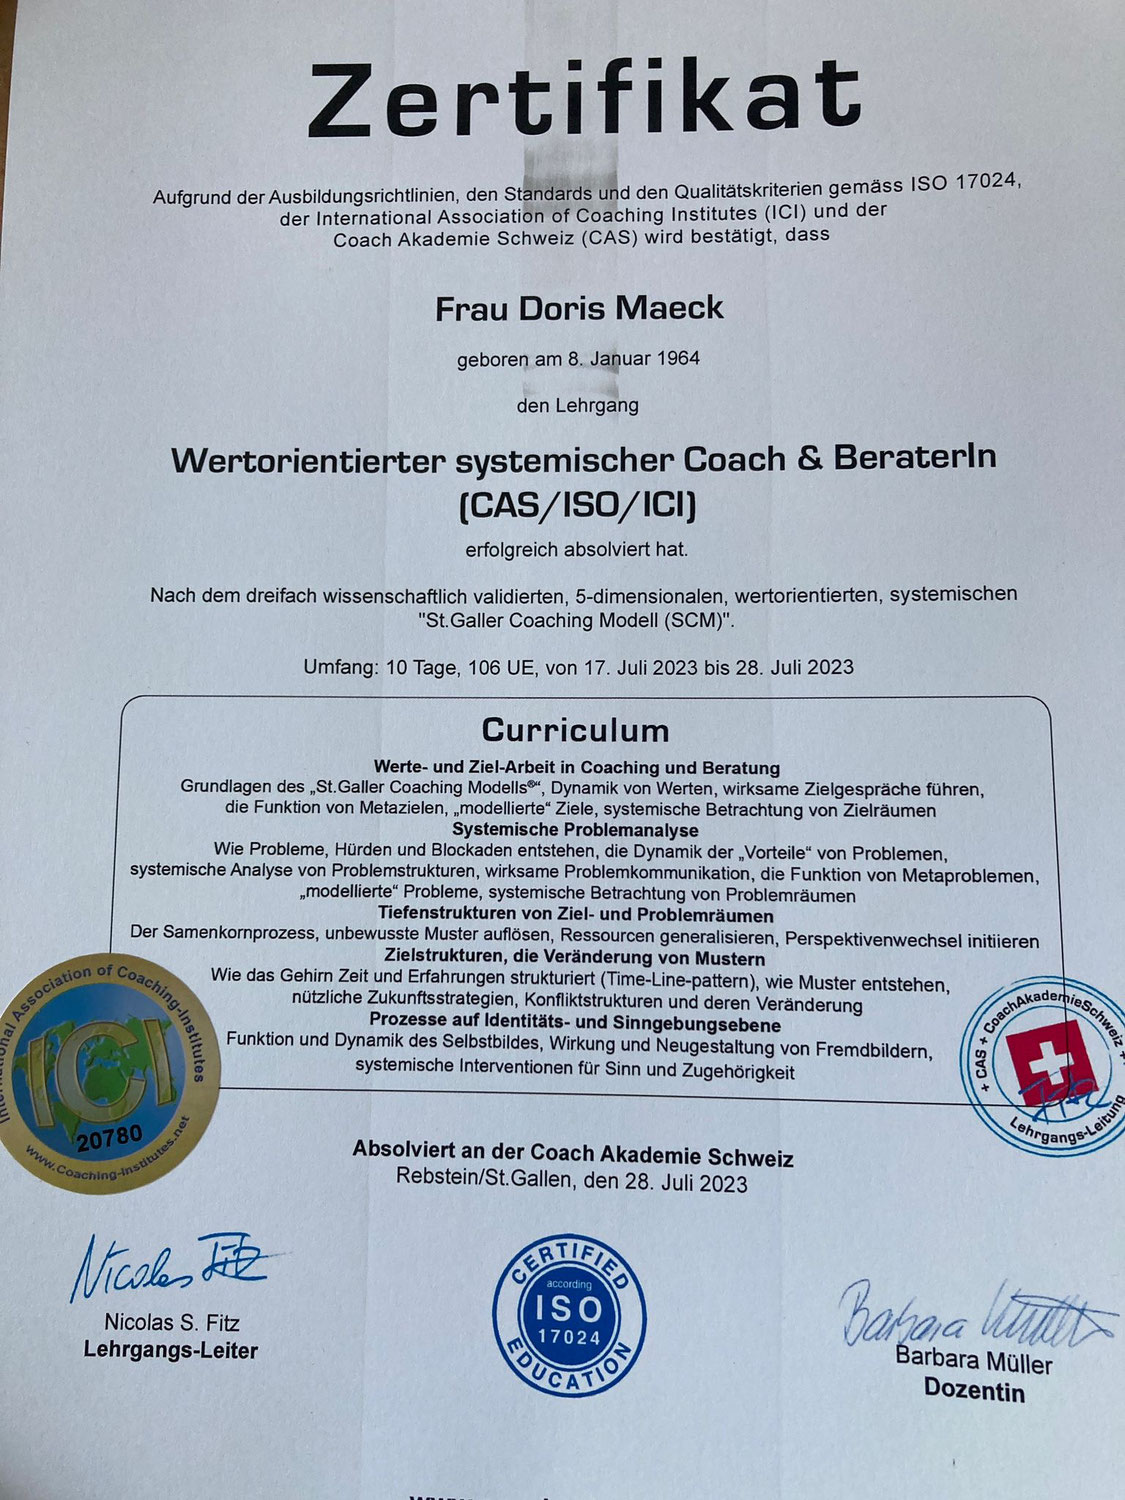 Zertifikat - Wertorientierter systemischer Coach & BeraterIn CAS/ISO/ICI